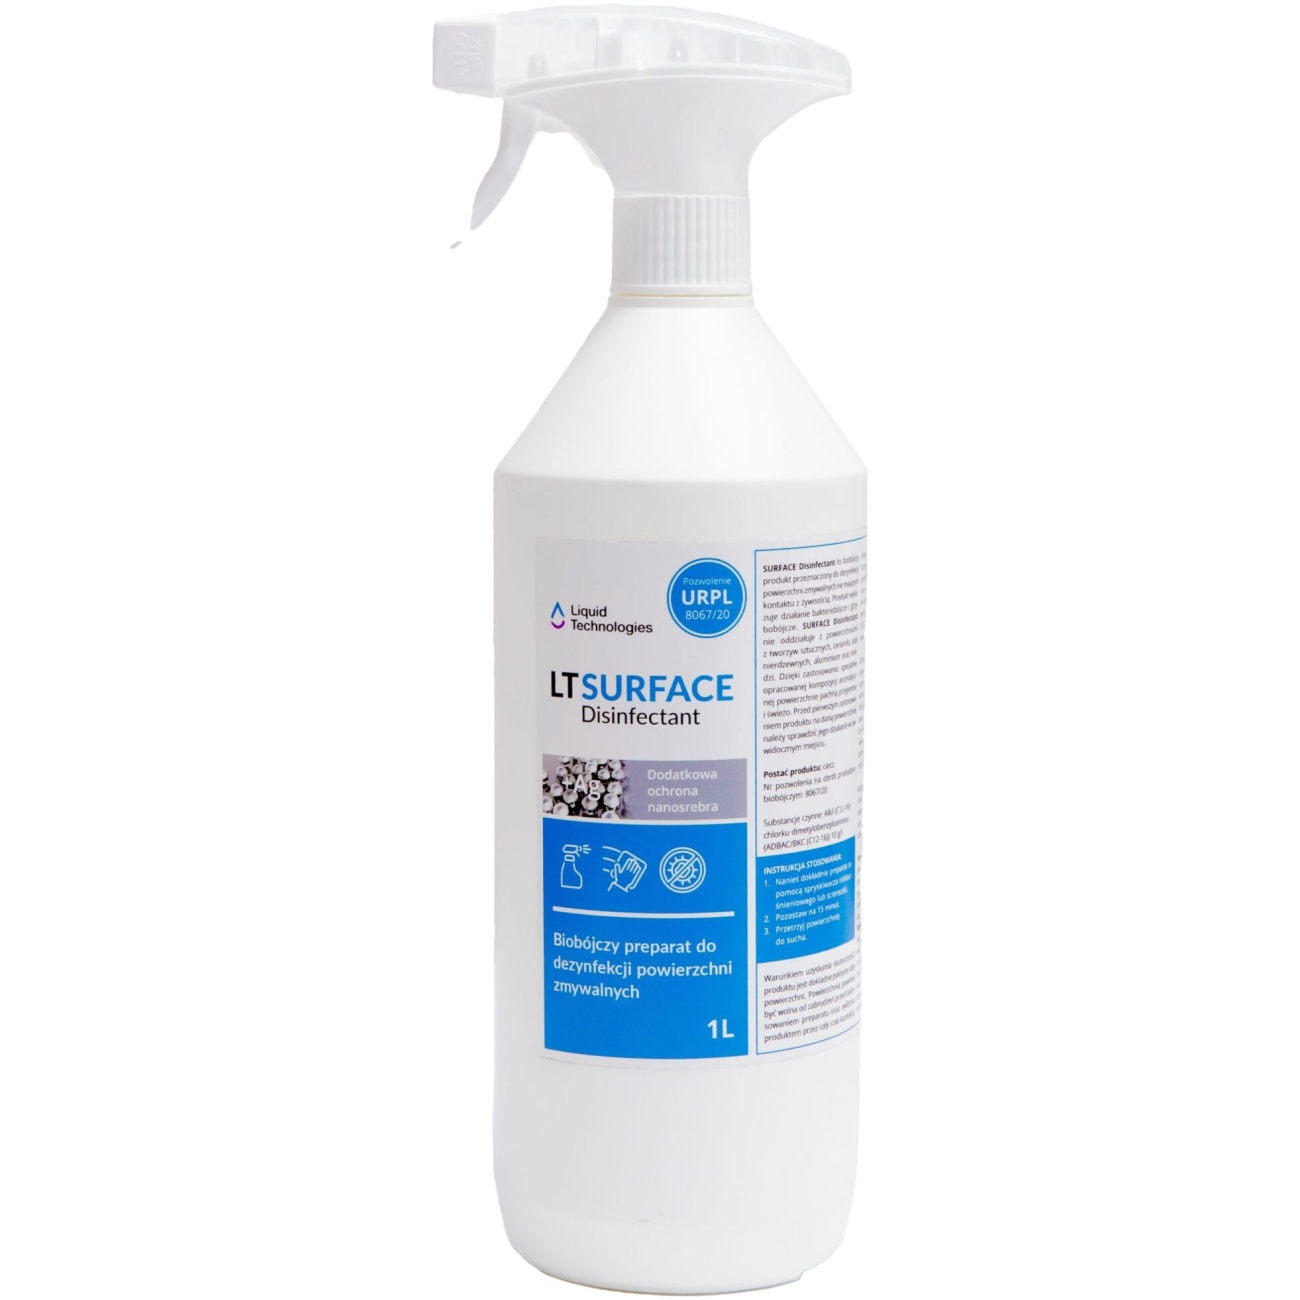 SURFACE Disinfectant 1 L płyn do dezynfekcji, środek biobójczy - LIQUID TECHNOLOGIES